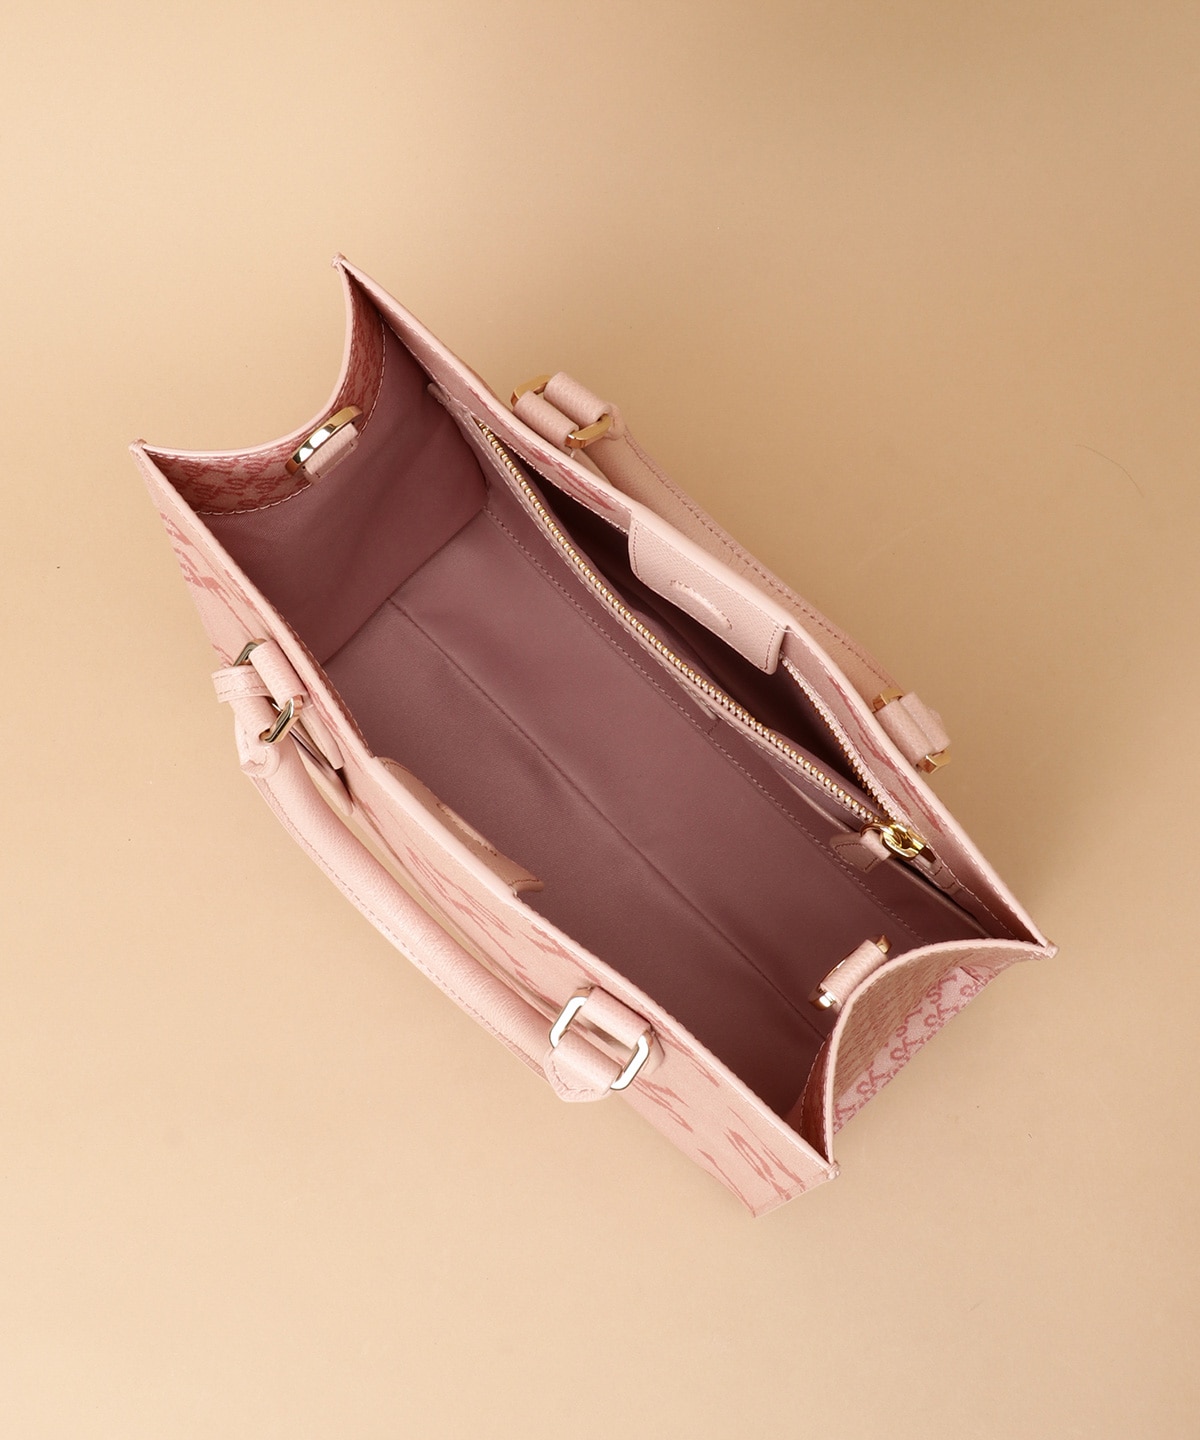 ☆[パステル]STヌーベルオレール トートバッグ 小サイズ(FREE ピンク